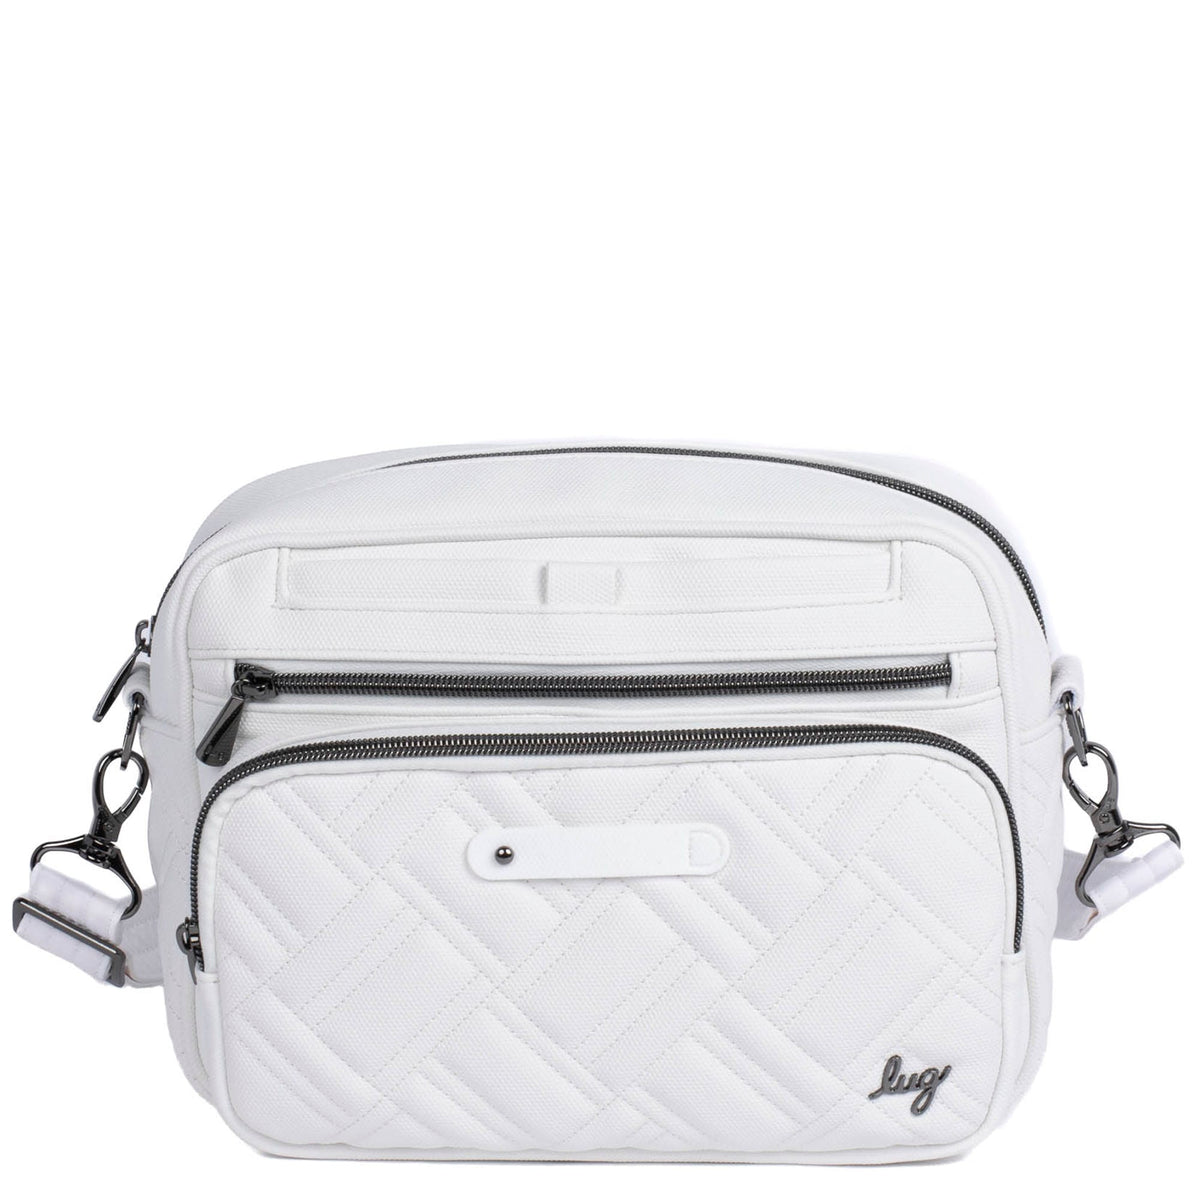 Carousel XL Matte Luxe VL Crossbody Bag